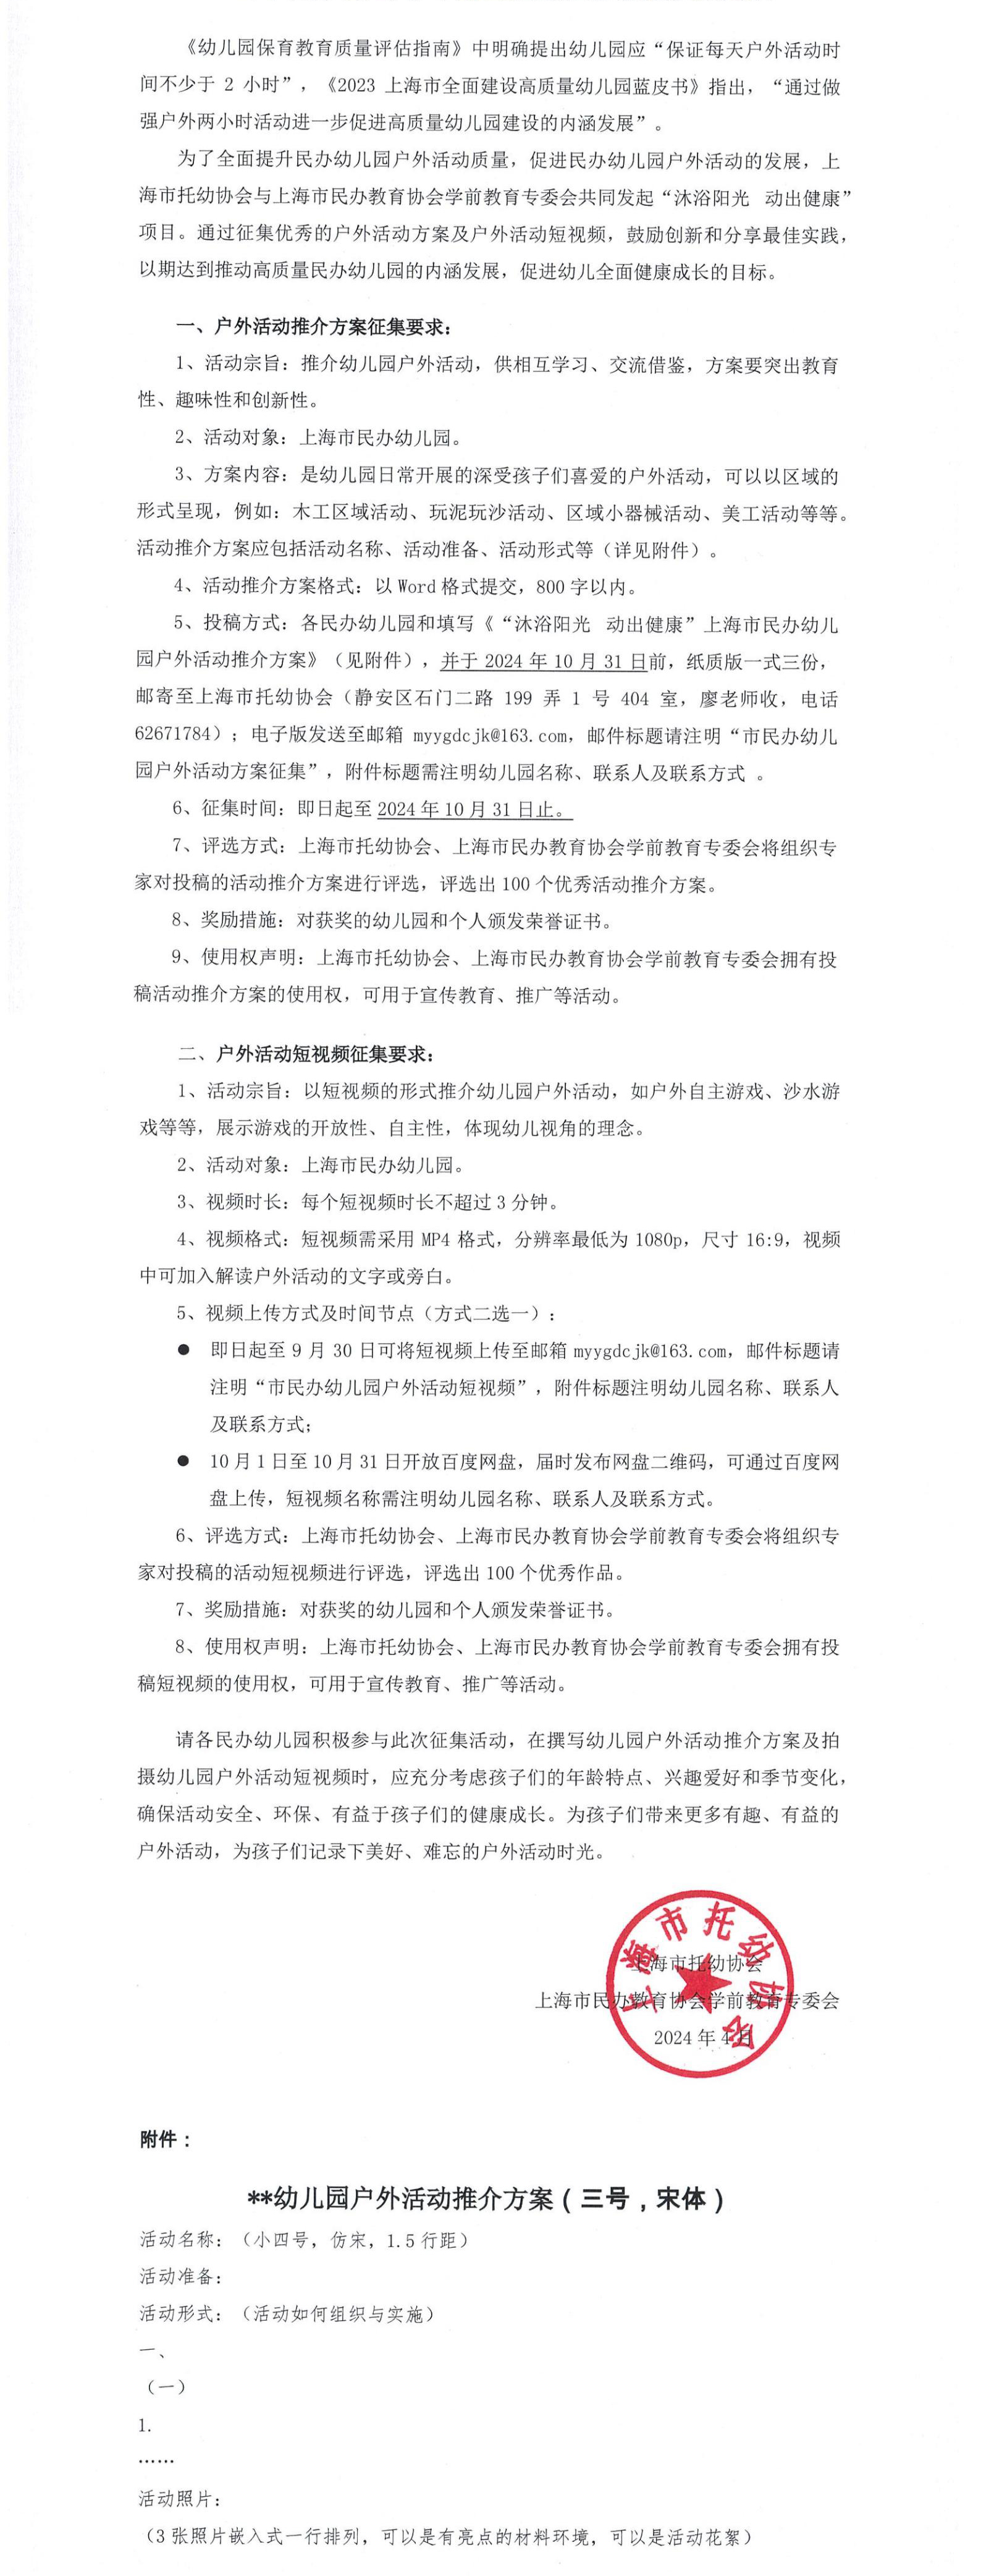 沐浴阳光 动出健康-上海市民办幼儿园户外活动方案及短视频征集要求2024.4_11.jpg